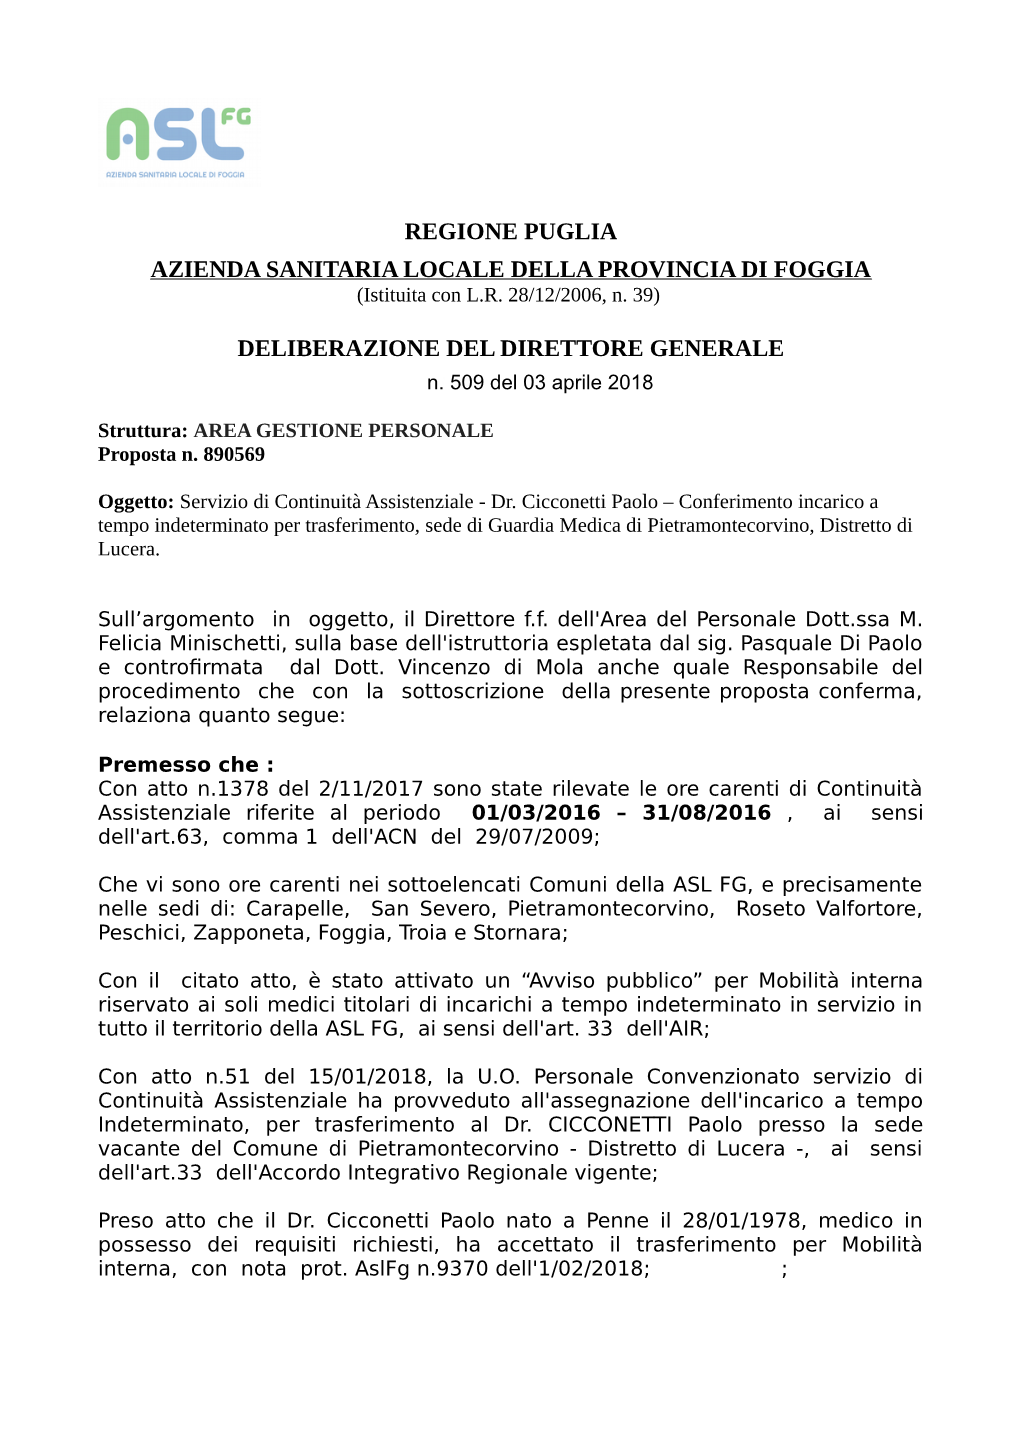 Regione Puglia Azienda Sanitaria Locale Della Provincia Di Foggia Deliberazione Del Direttore Generale